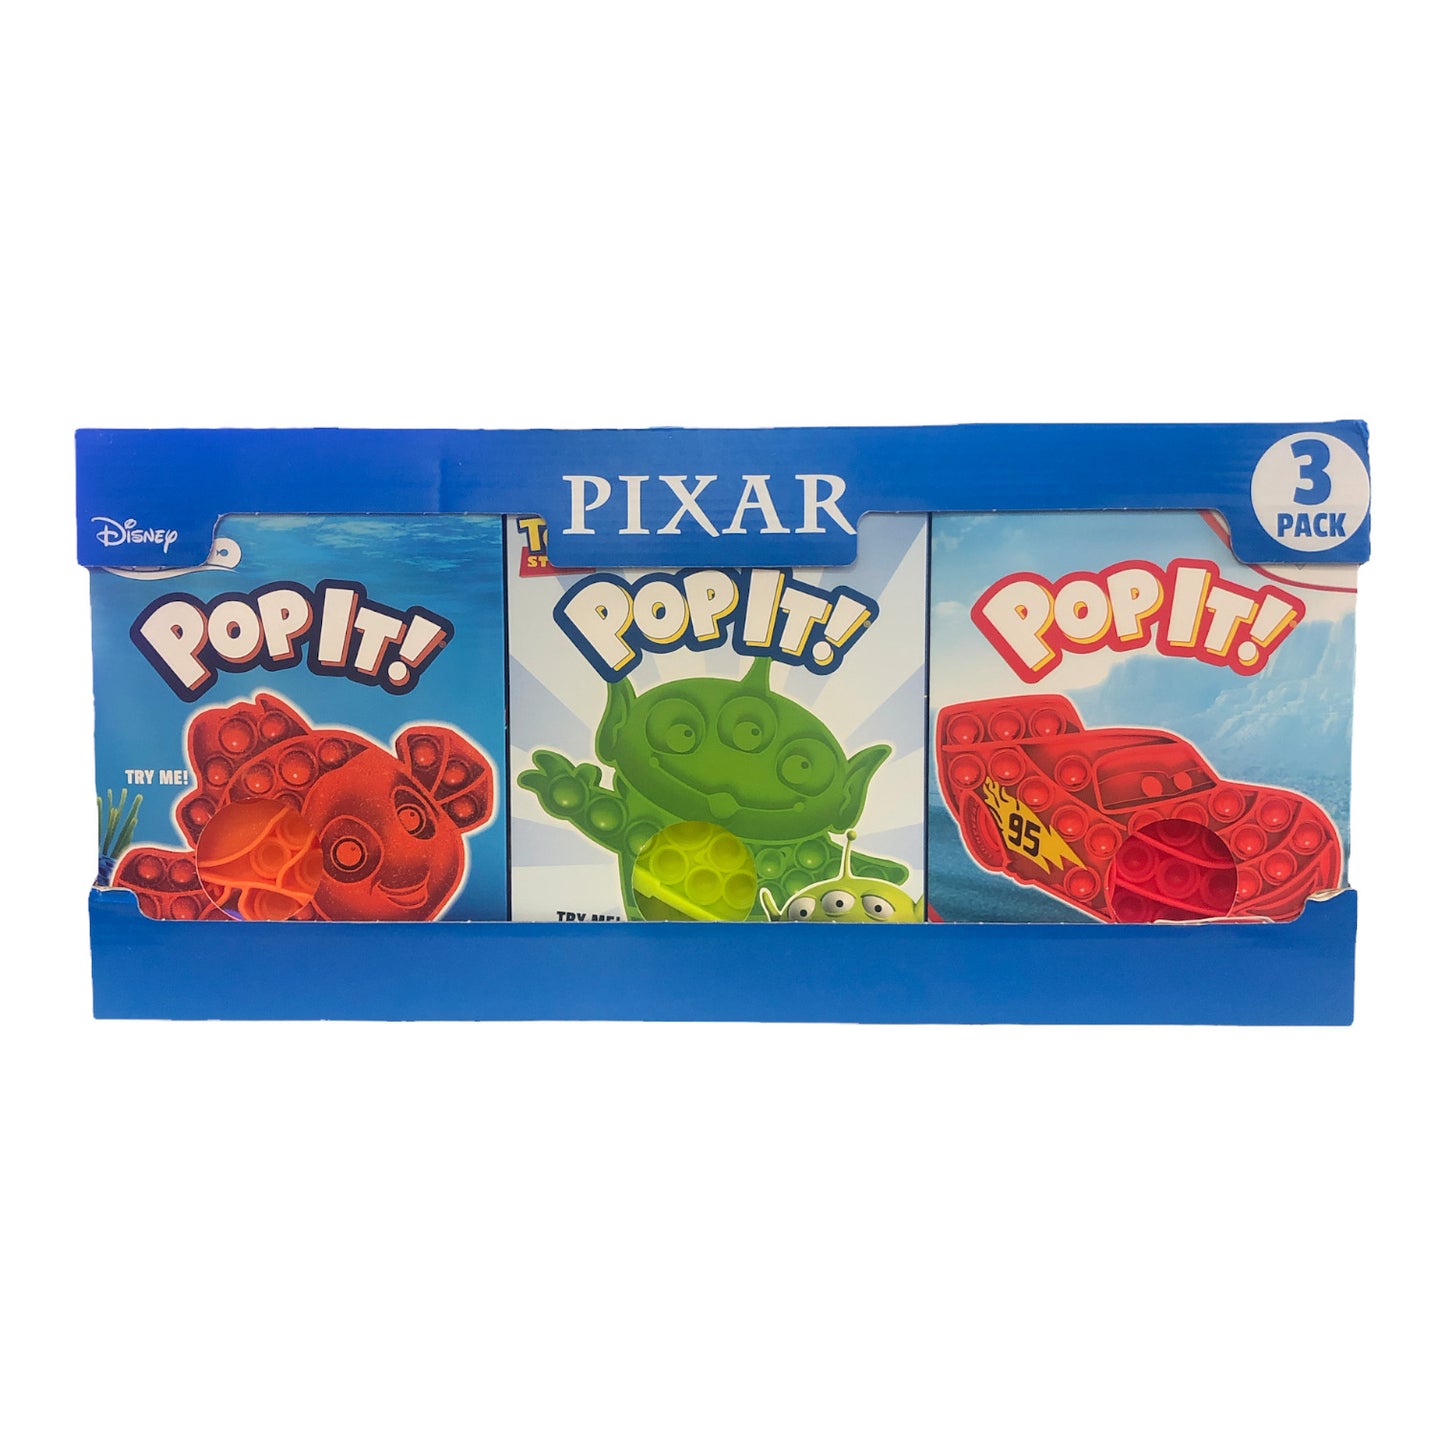 POP IT! 3 Pack Sets - Select from Disney, Star Wars, Pixar, Marvel